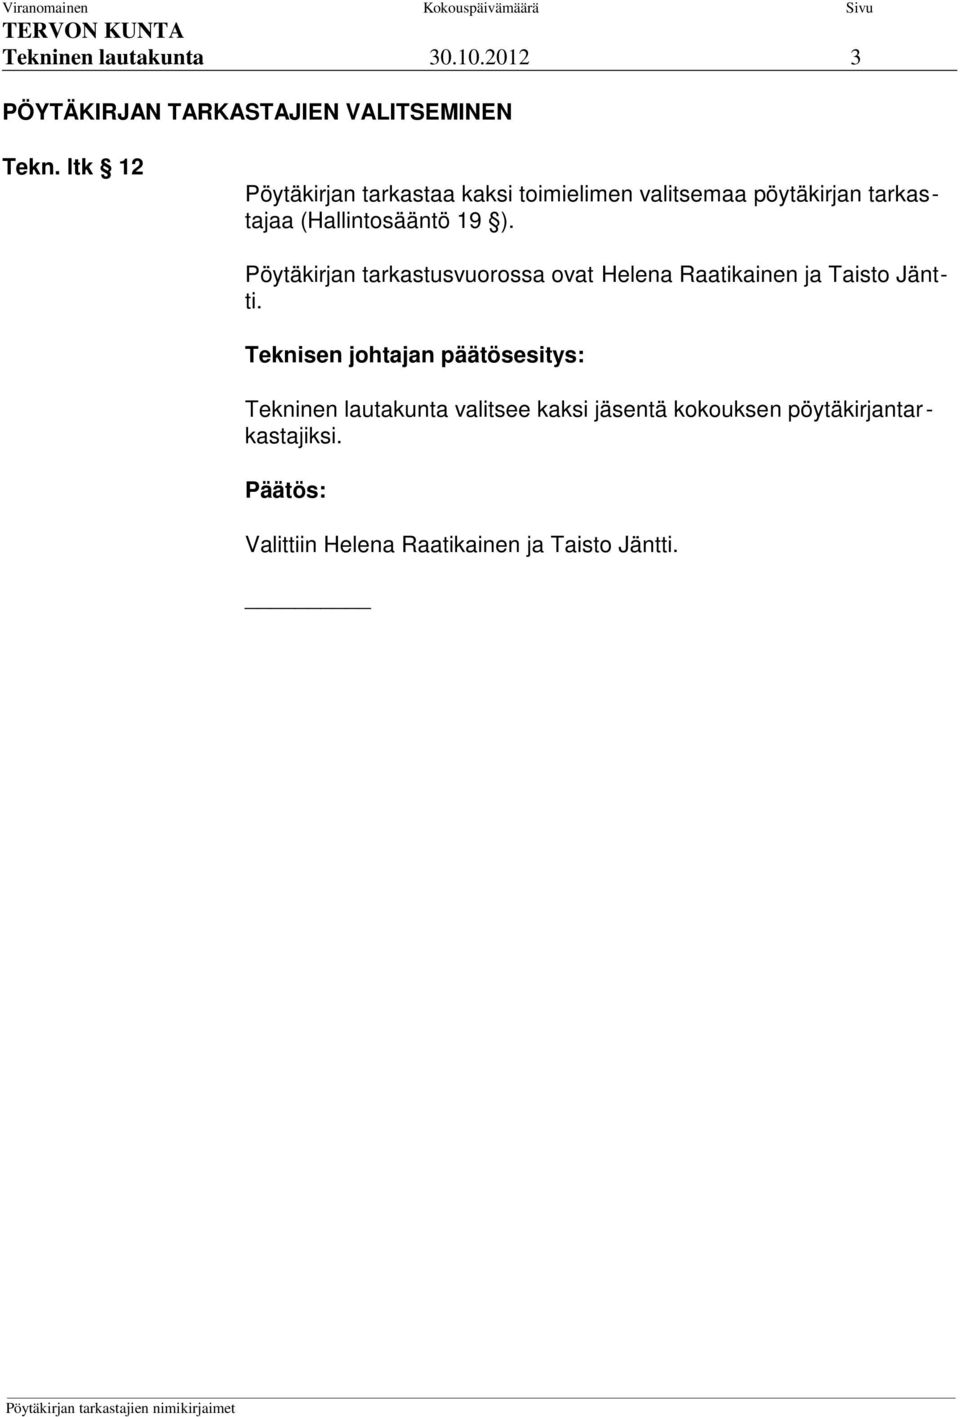 (Hallintosääntö 19 ). Pöytäkirjan tarkastusvuorossa ovat Helena Raatikainen ja Taisto Jäntti.